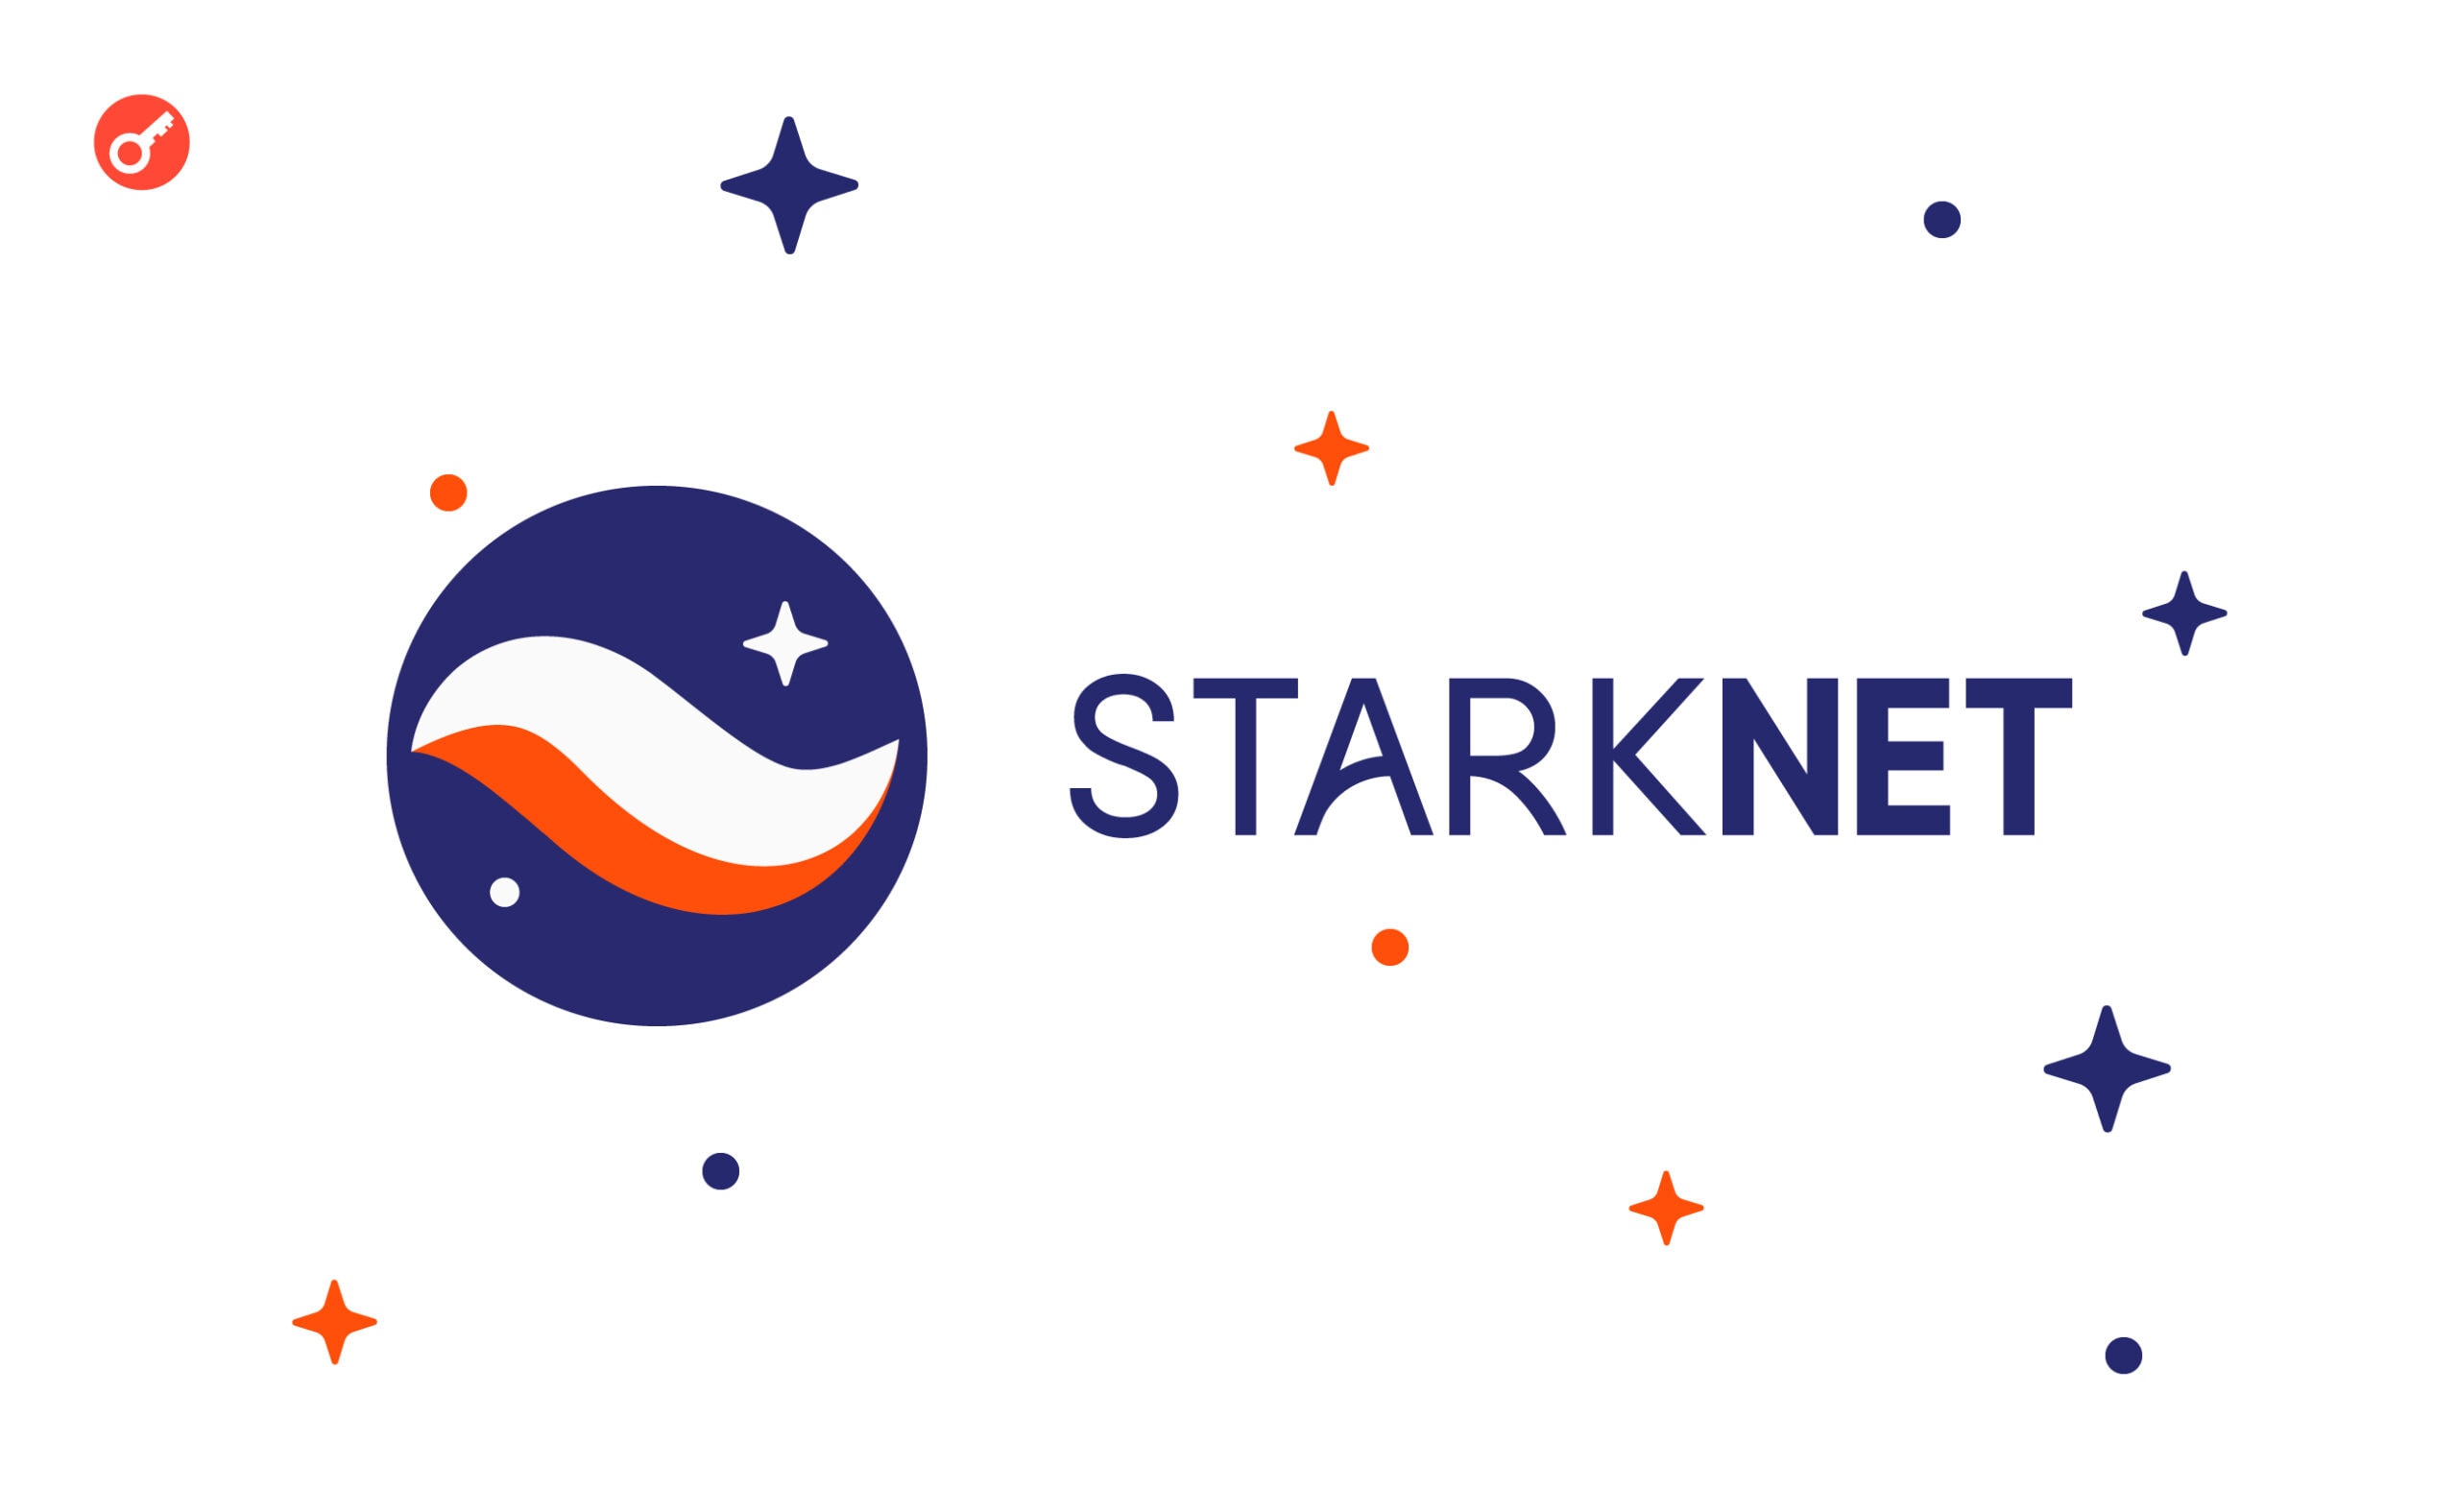 Starknet с 12 июля интегрирует важные обновления в основную сеть. Заглавный коллаж новости.